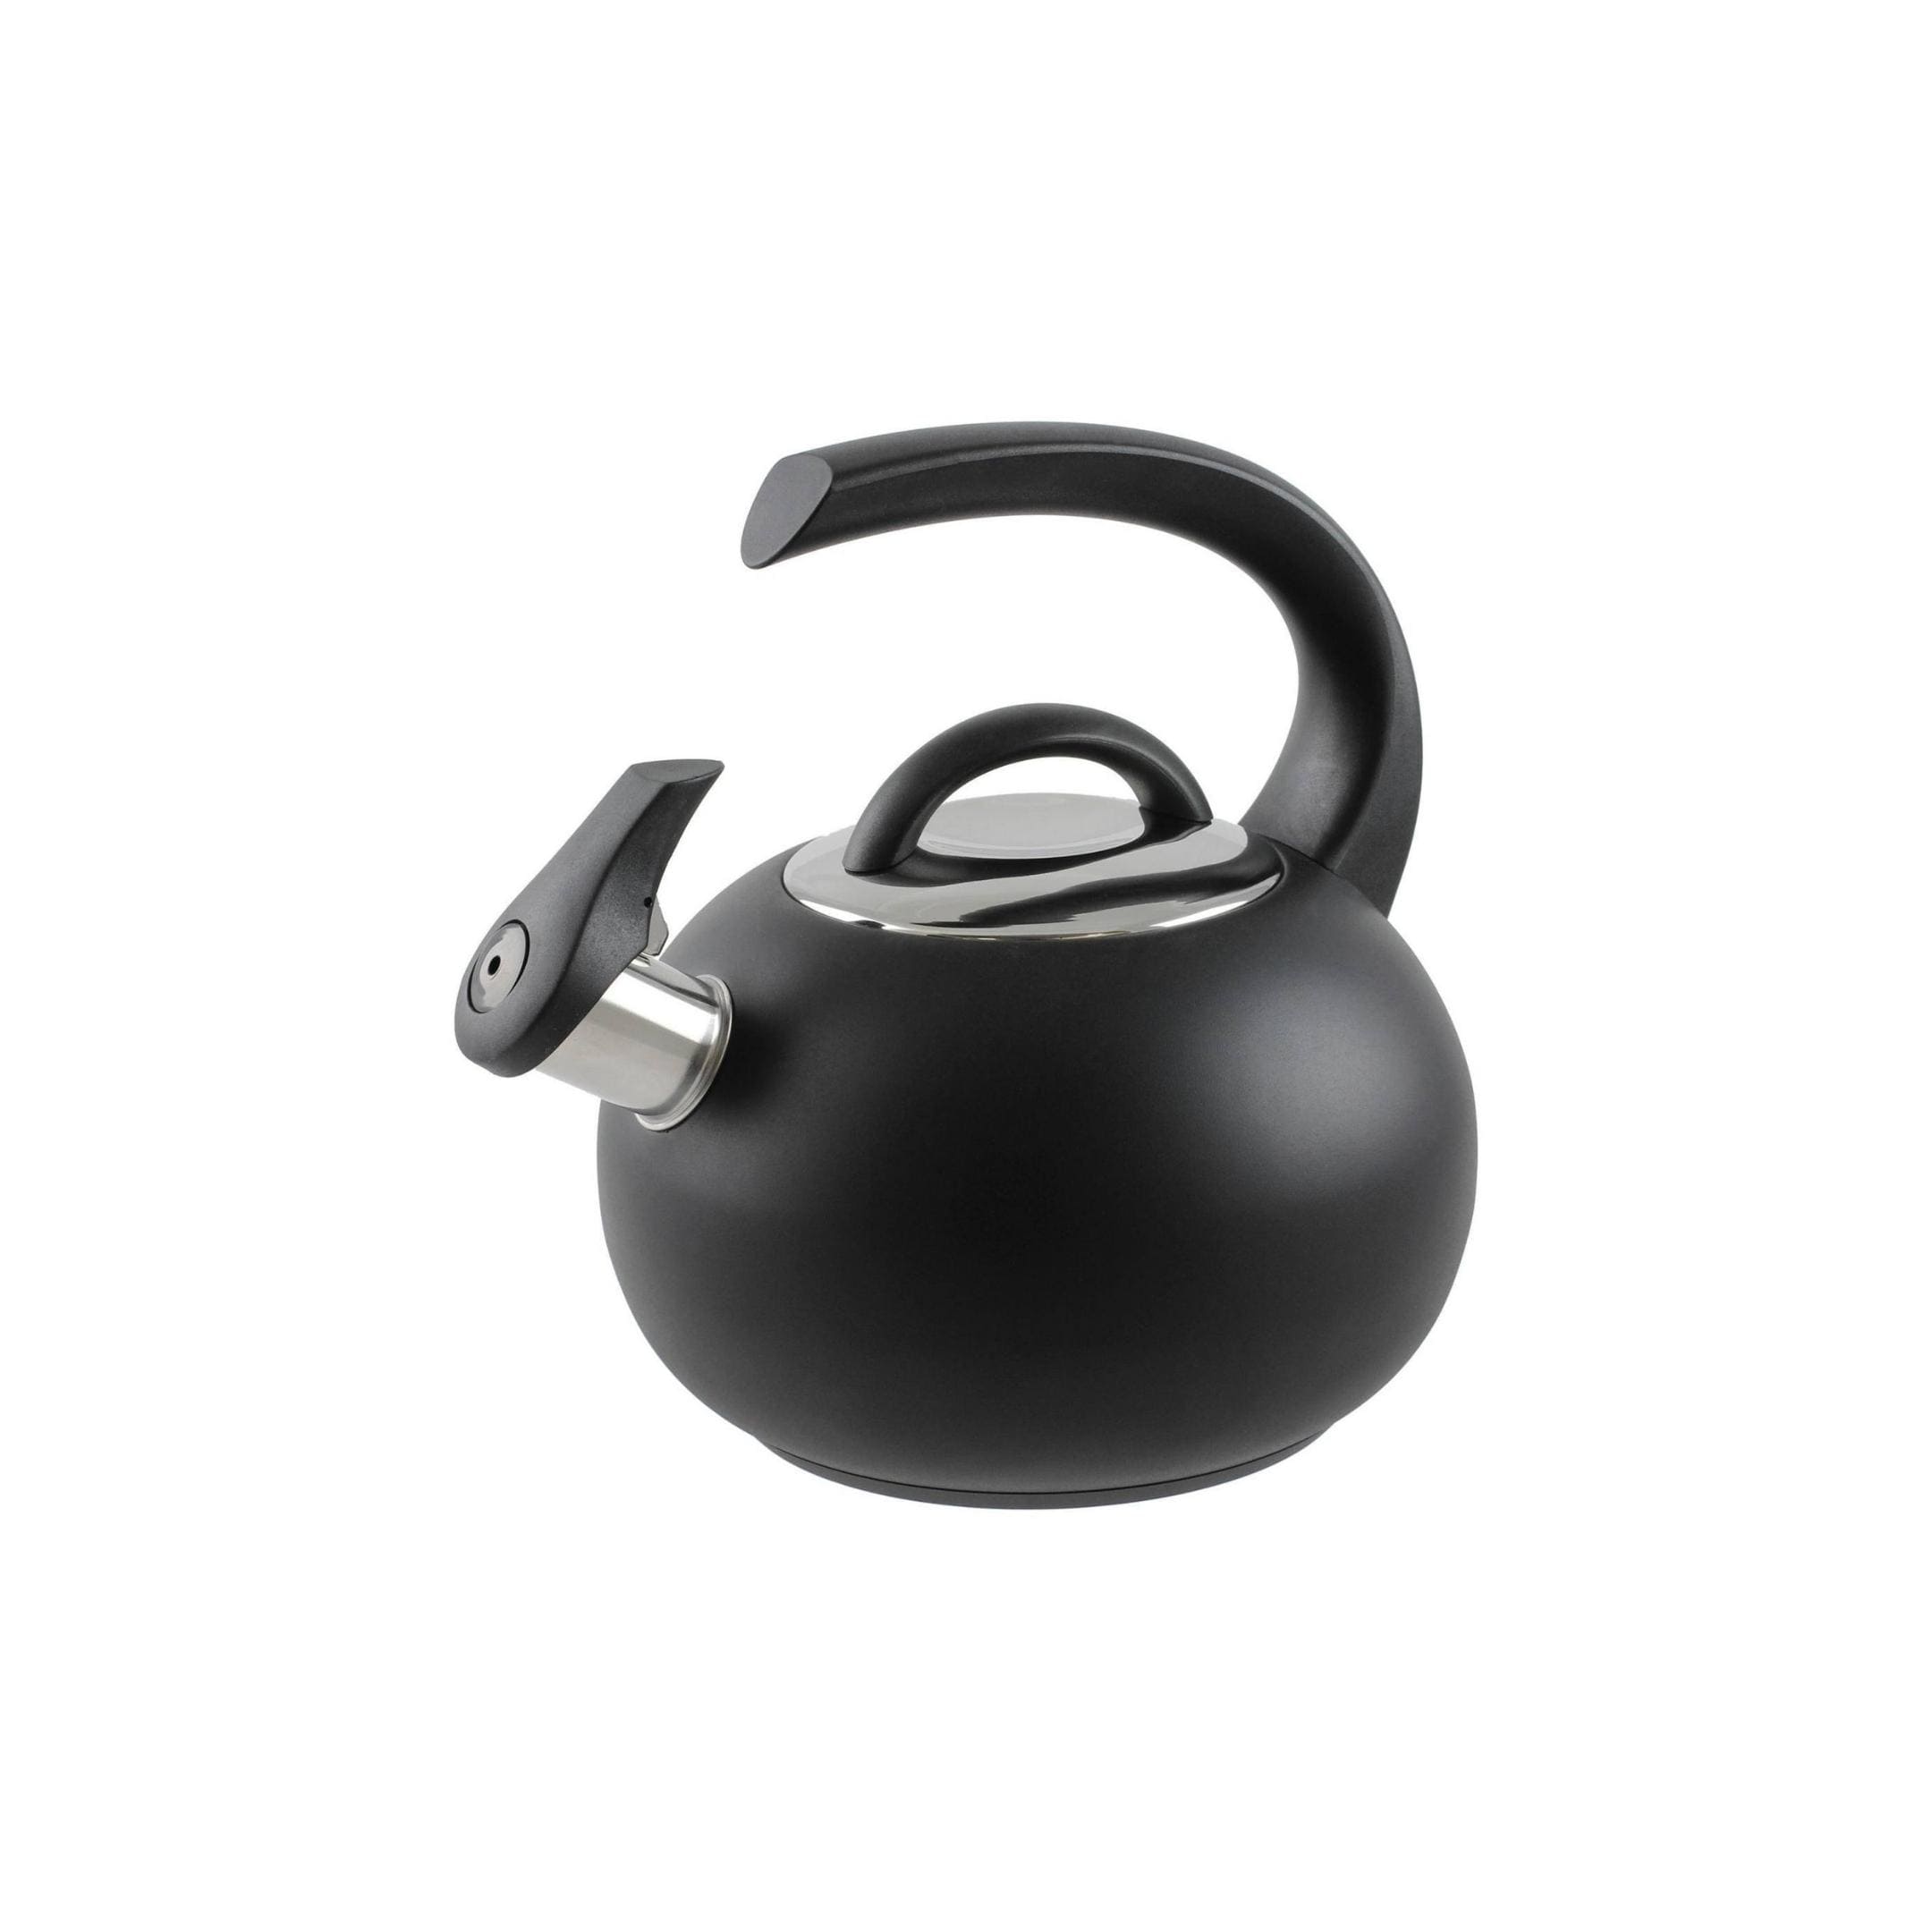 Neptune kettle 1,9 l black stainless steel Cristel